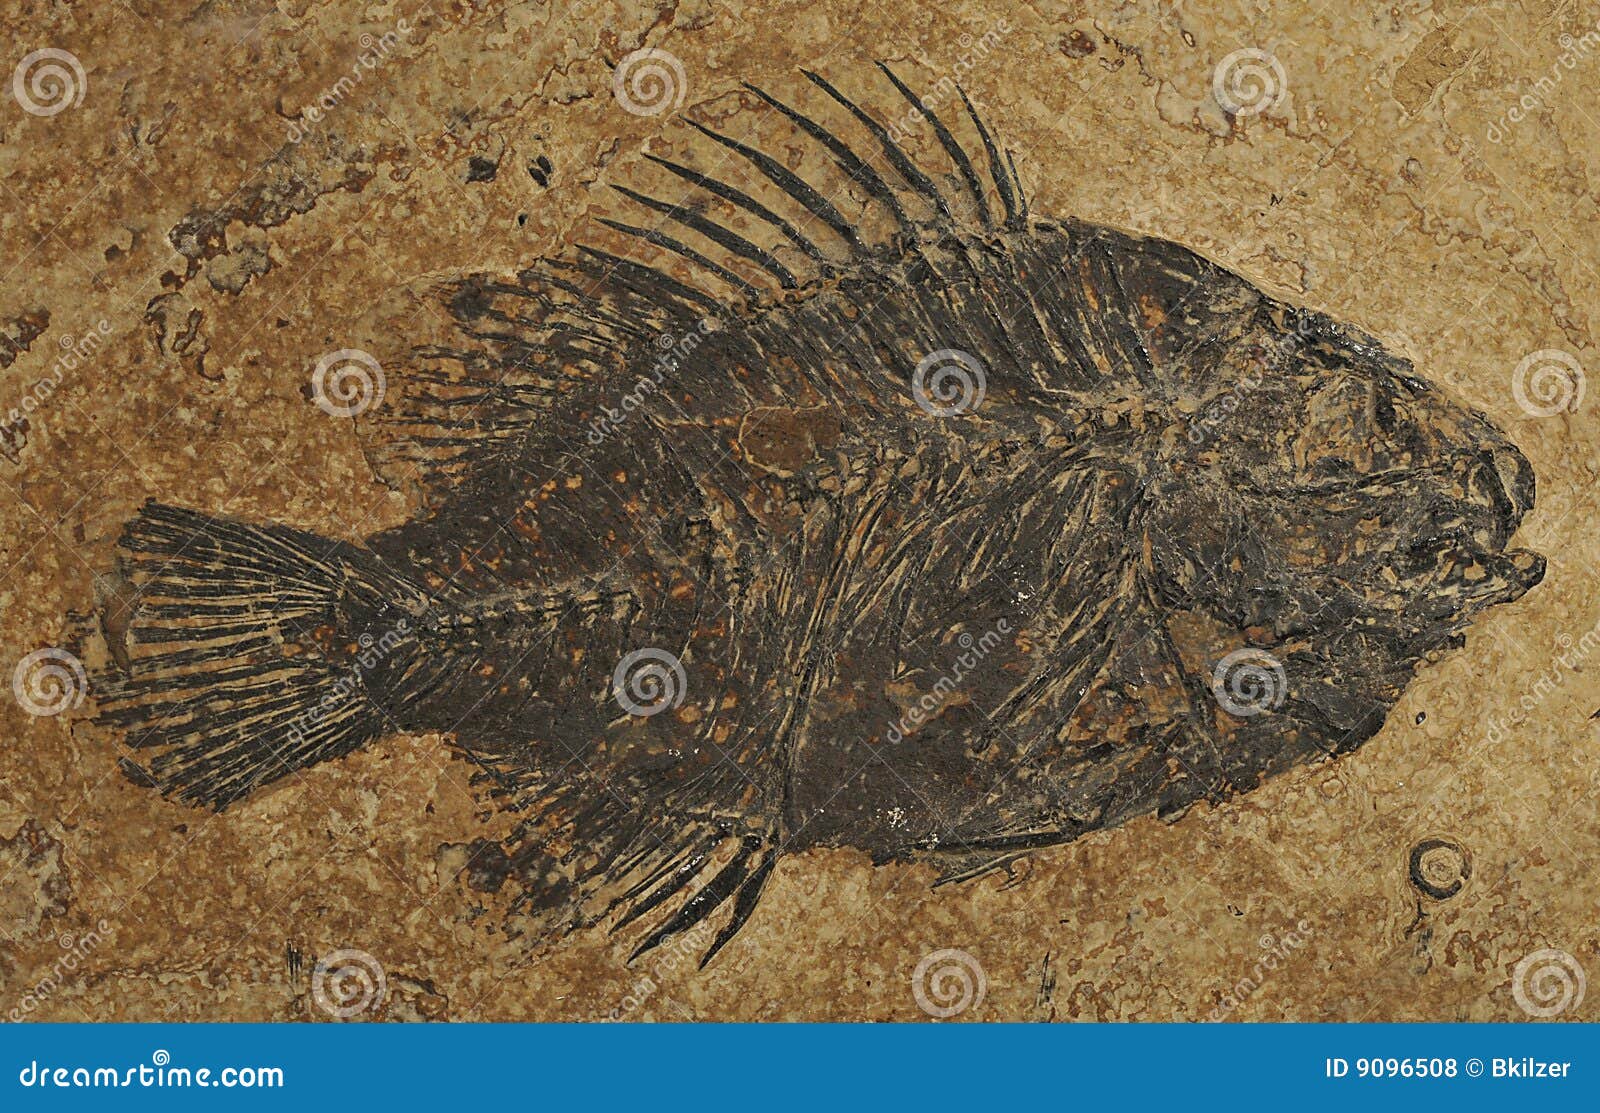 图片素材 : 鱼, 动物群, 雕塑, 艺术, 骨架, 化石, 横截面, 石化, 海洋生物学, 身体世界 4320x2432 ...